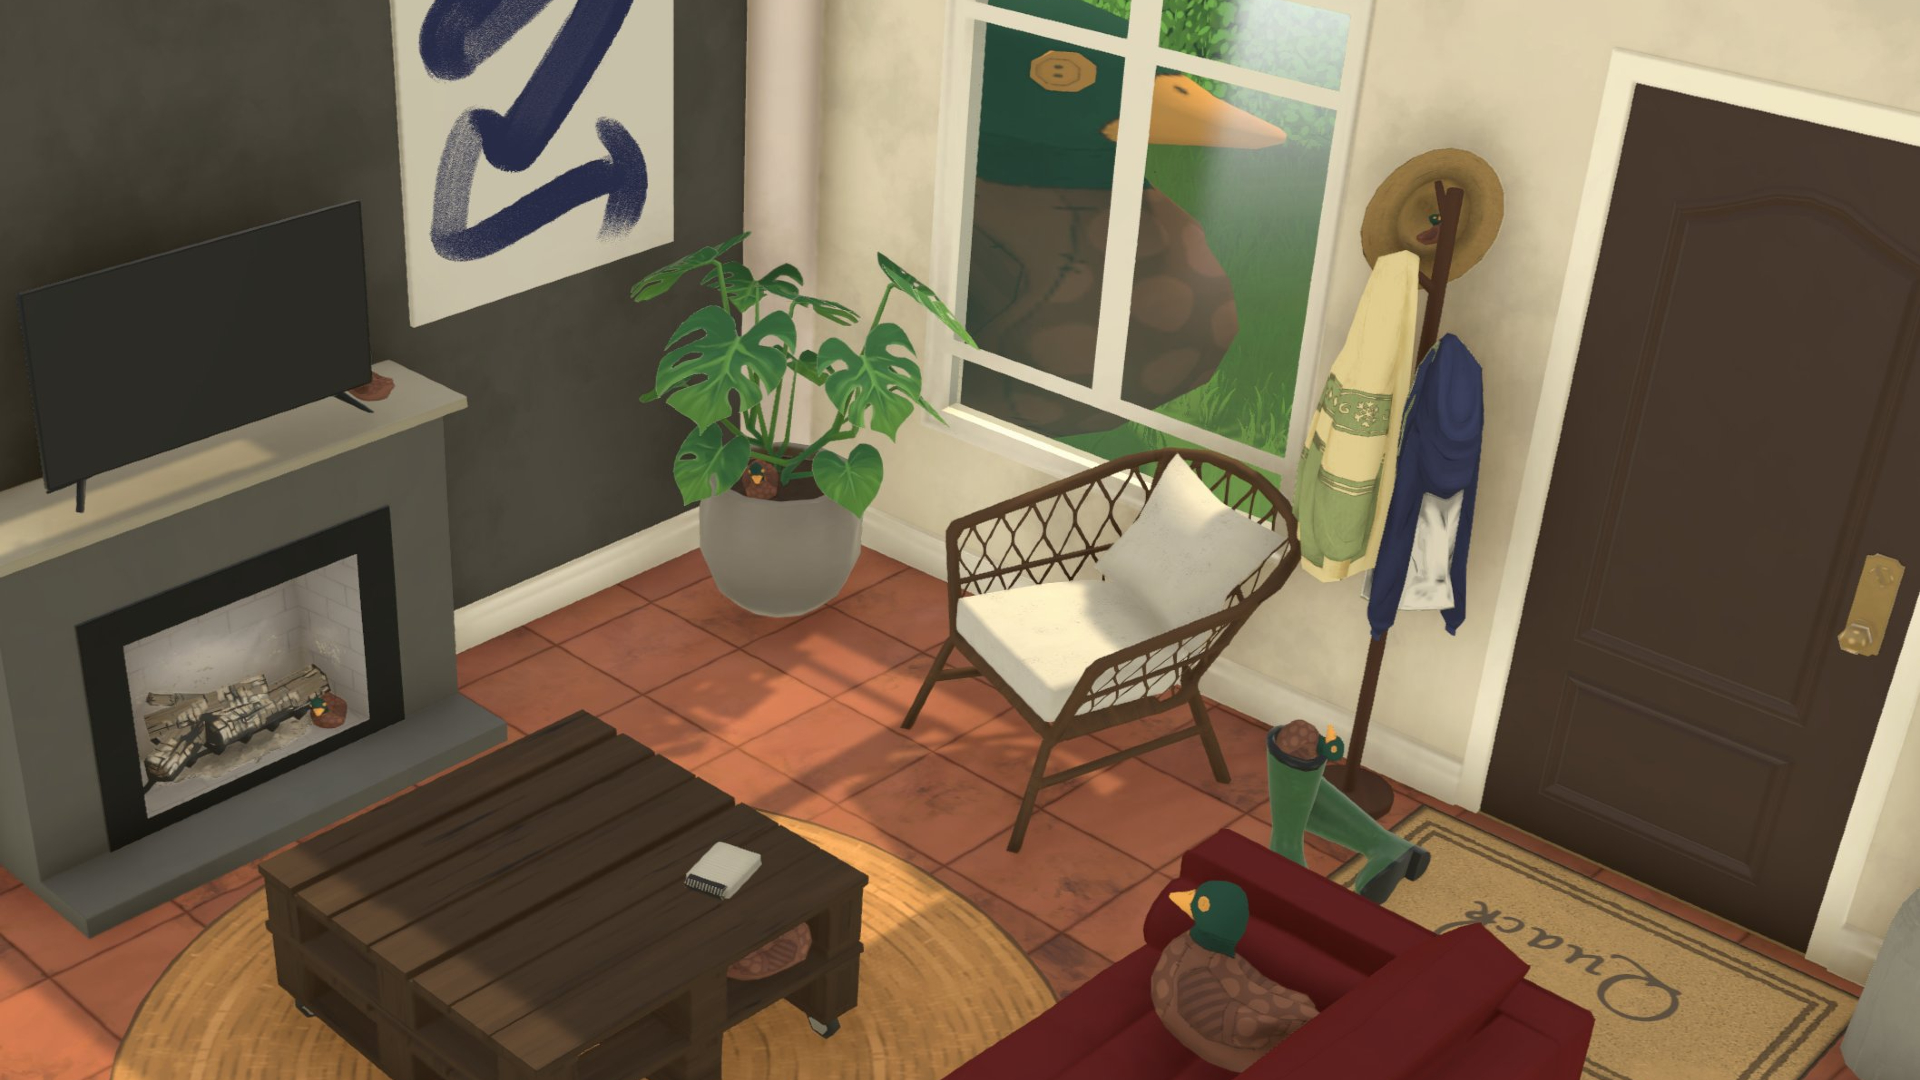 Una sala de estar en el juego Paralives con una chimenea, una mesa, un sofá y dos patos de peluche.  Un peluche está en el sofá y el otro es enorme en la ventana.